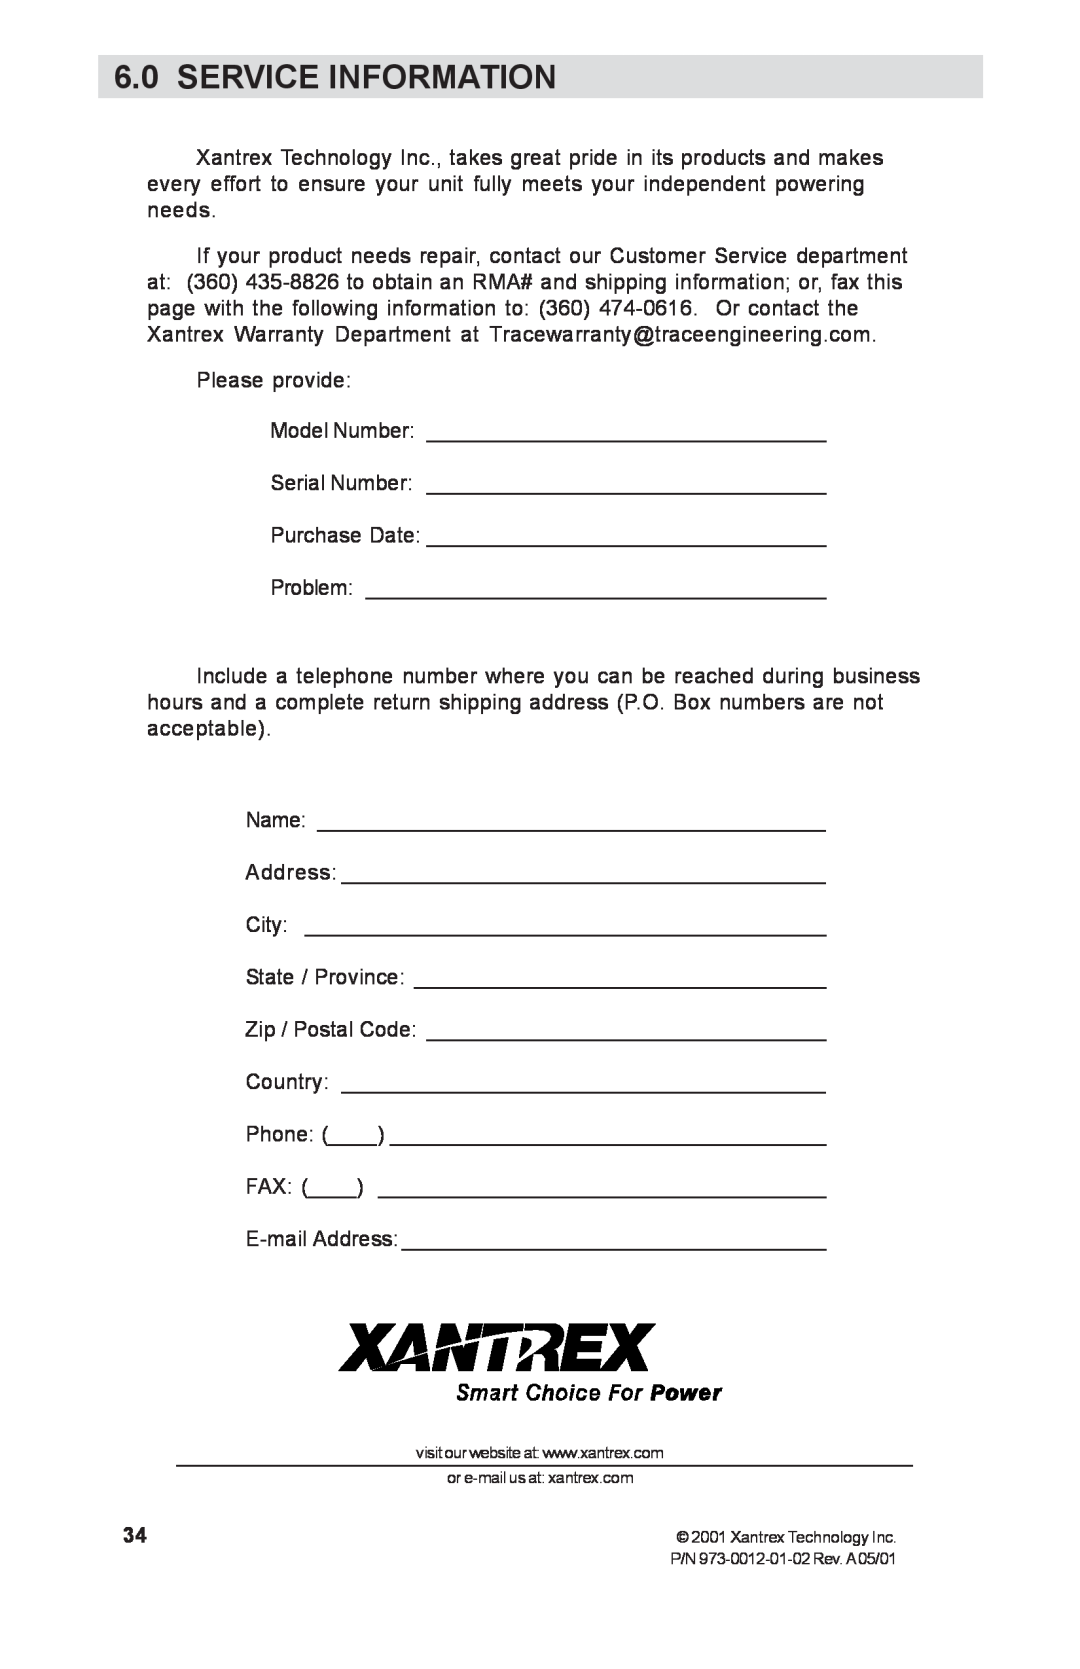 Xantrex Technology TM500A manual Service Information 